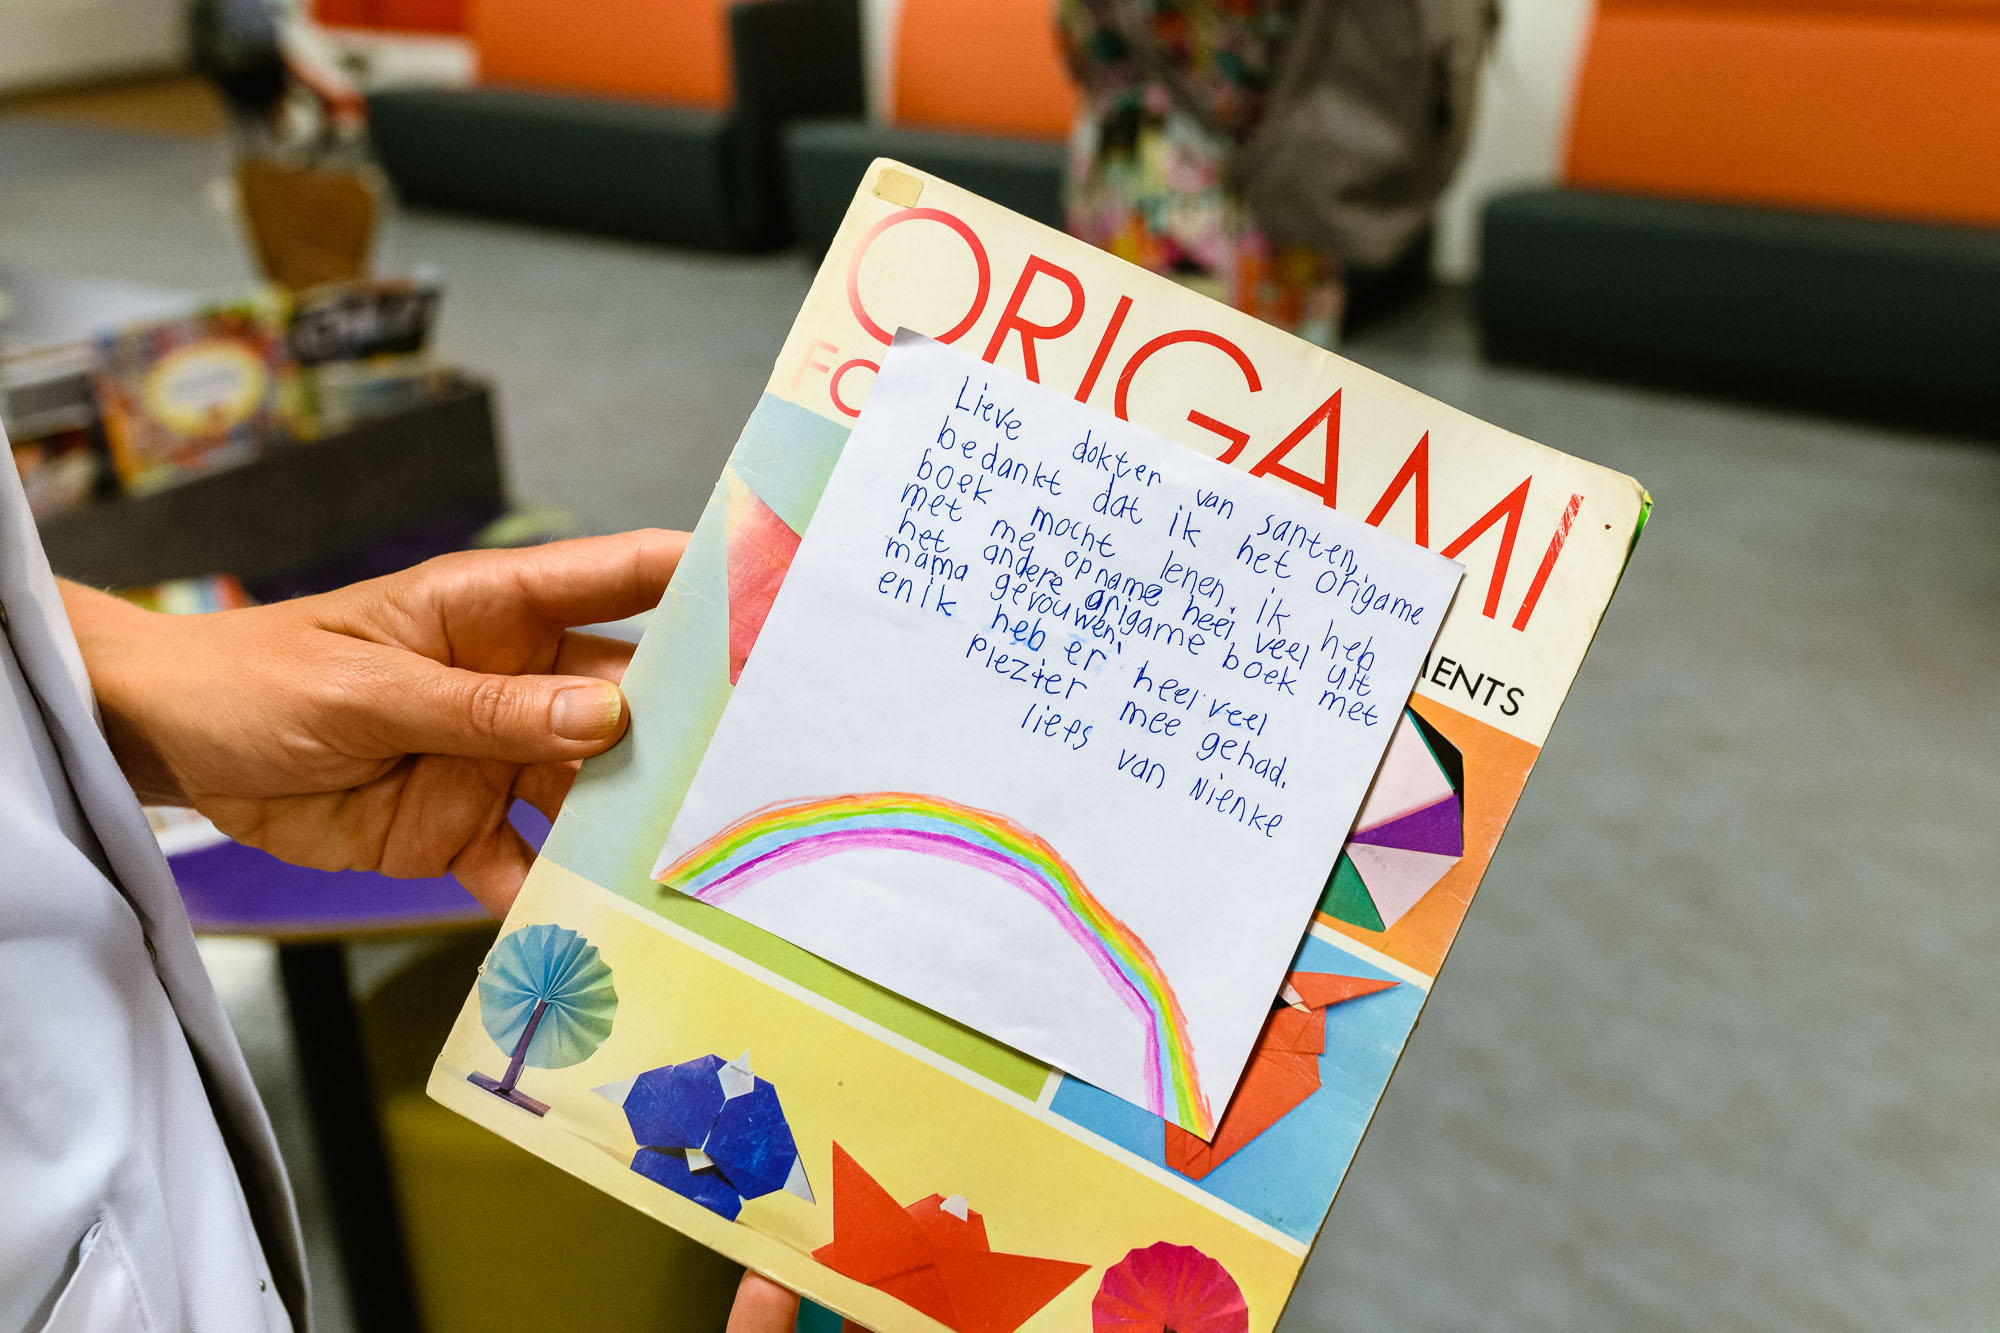 Nienke bracht het geleende origami-boekje terug en had daar een prachtig briefje voor de dokter bij geschreven. Beeldbank UMC Utrecht en WKZ polikliniek bezoek.